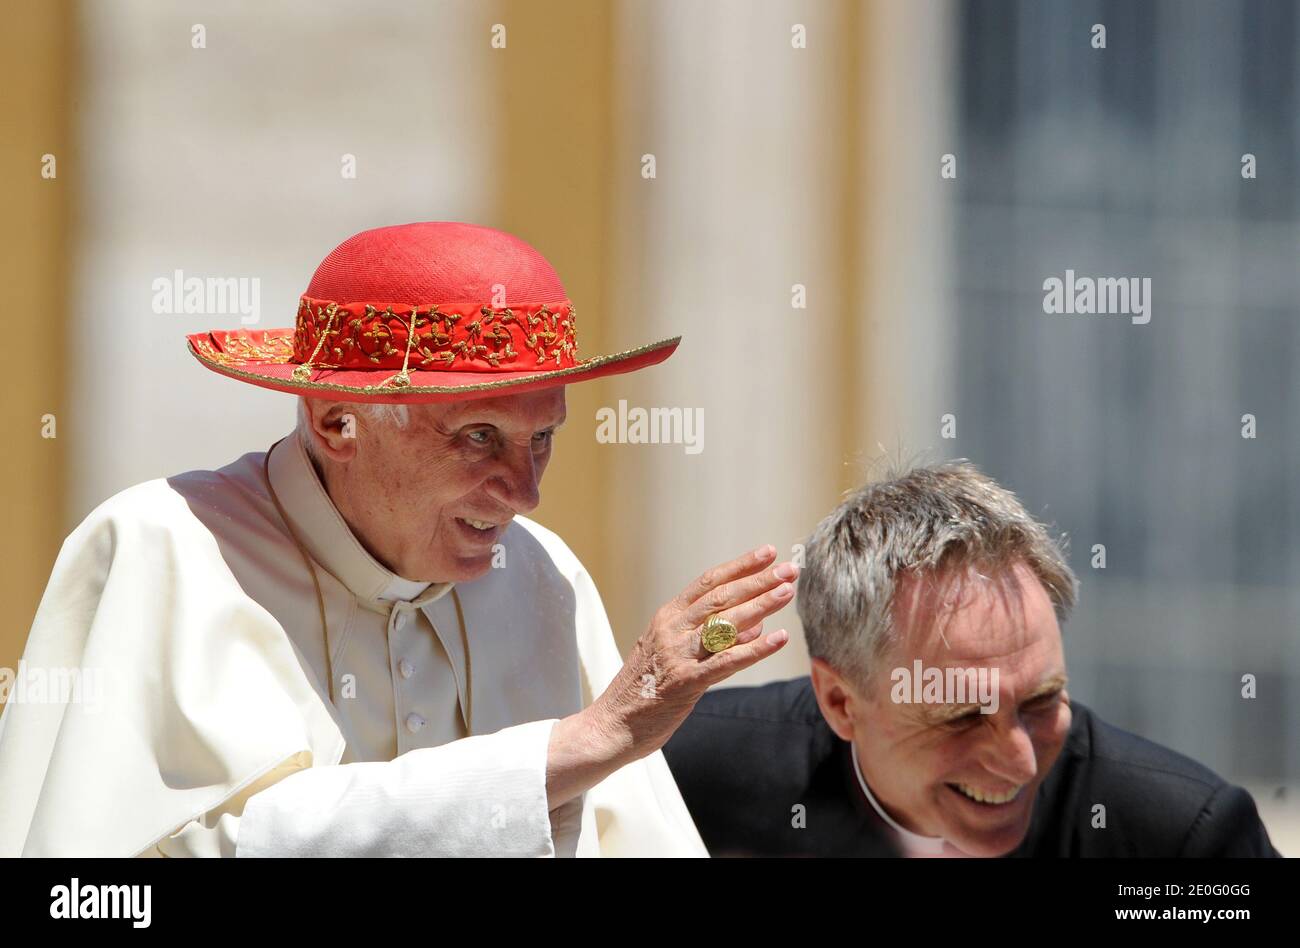 Giornata di sole a Roma: Papa Benedetto XVI indossa il cappello rosso di  Saturno, che prende il nome dal pianeta soleggiato Saturno, al termine  dell'udienza generale settimanale in Piazza San Pietro, in